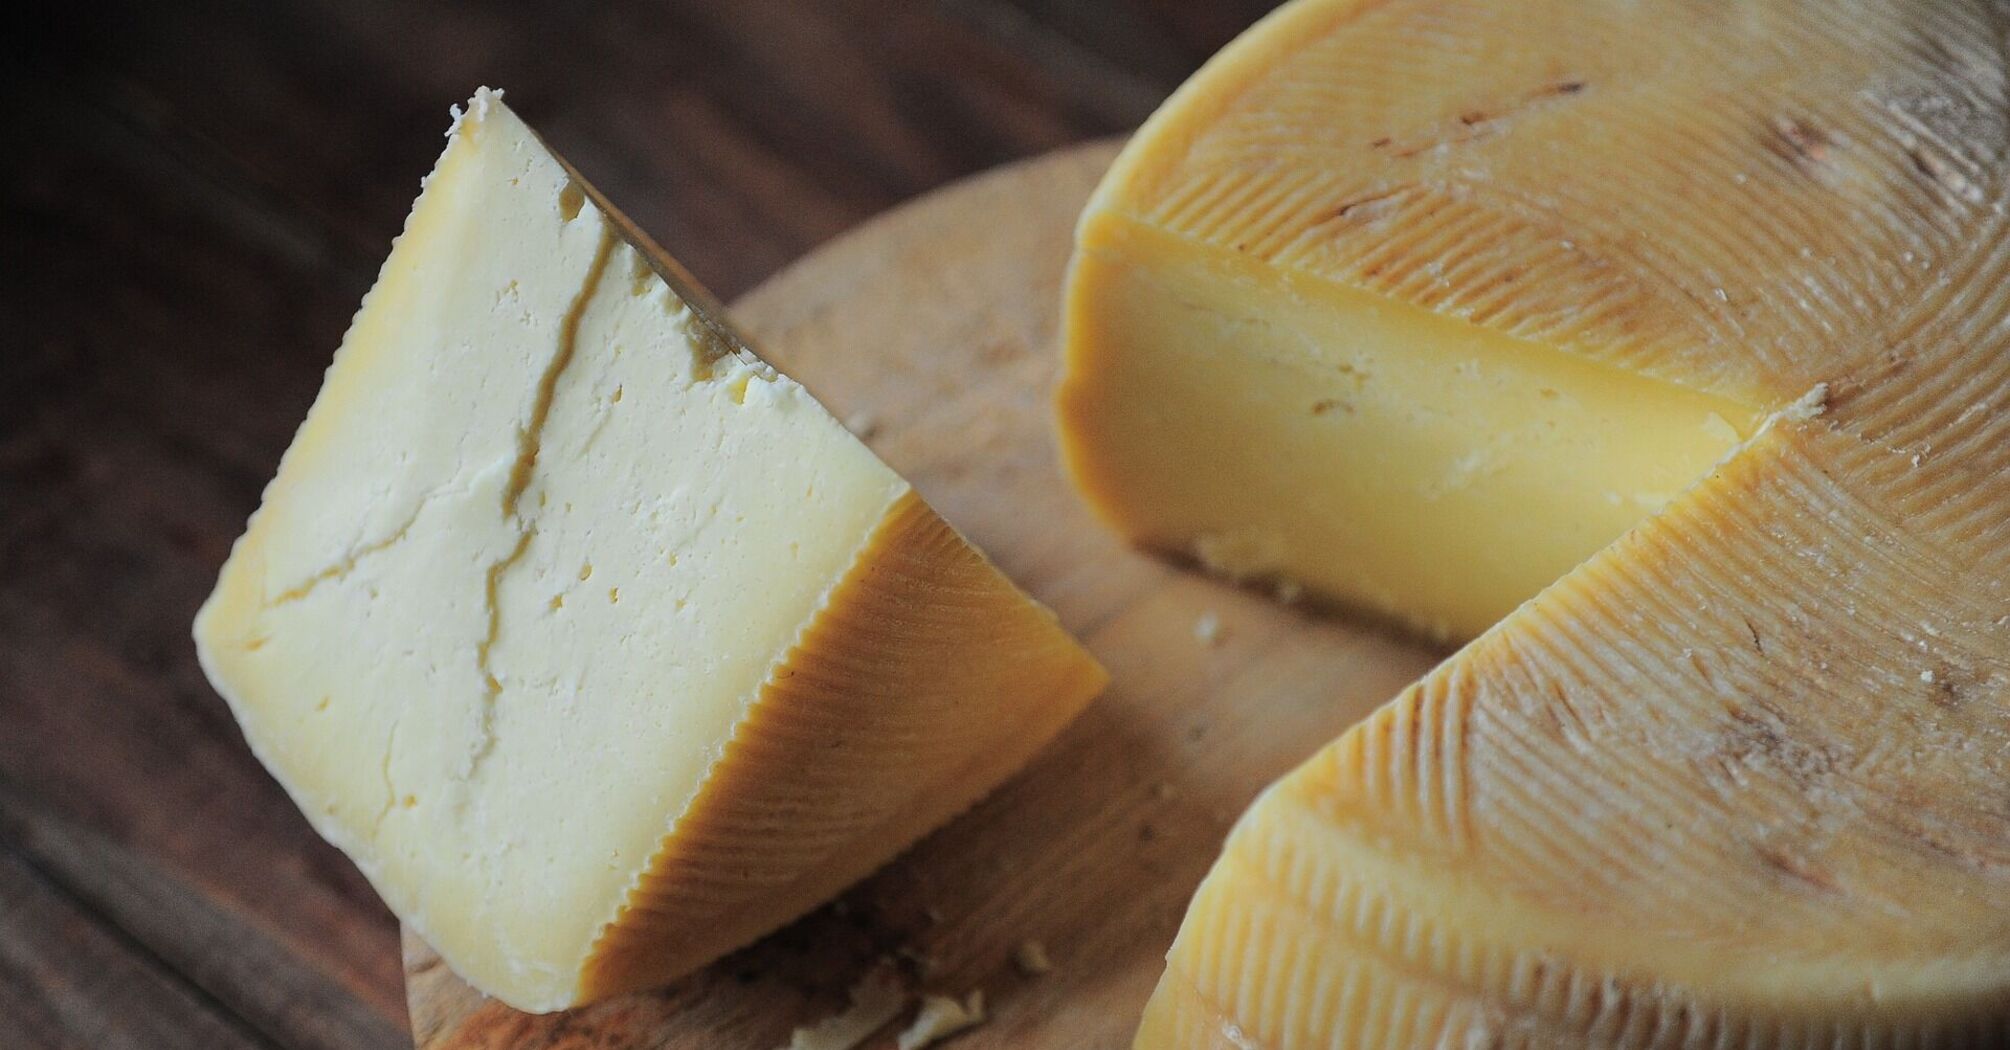 Как выбрать качественный сыр